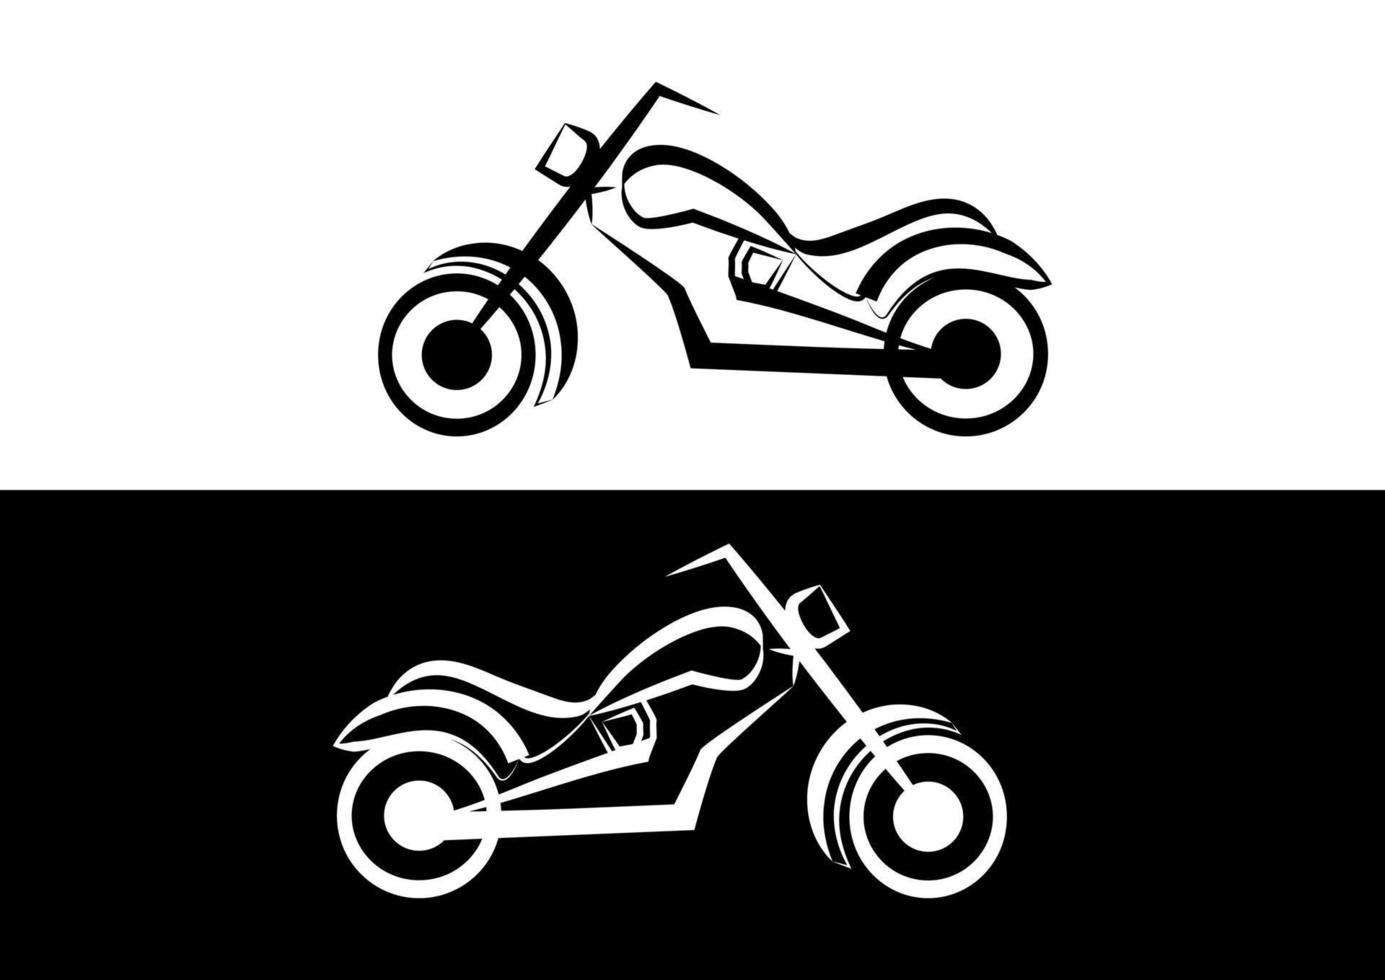 zwart-wit motorpictogram in vlakke stijl vectorillustratie vector